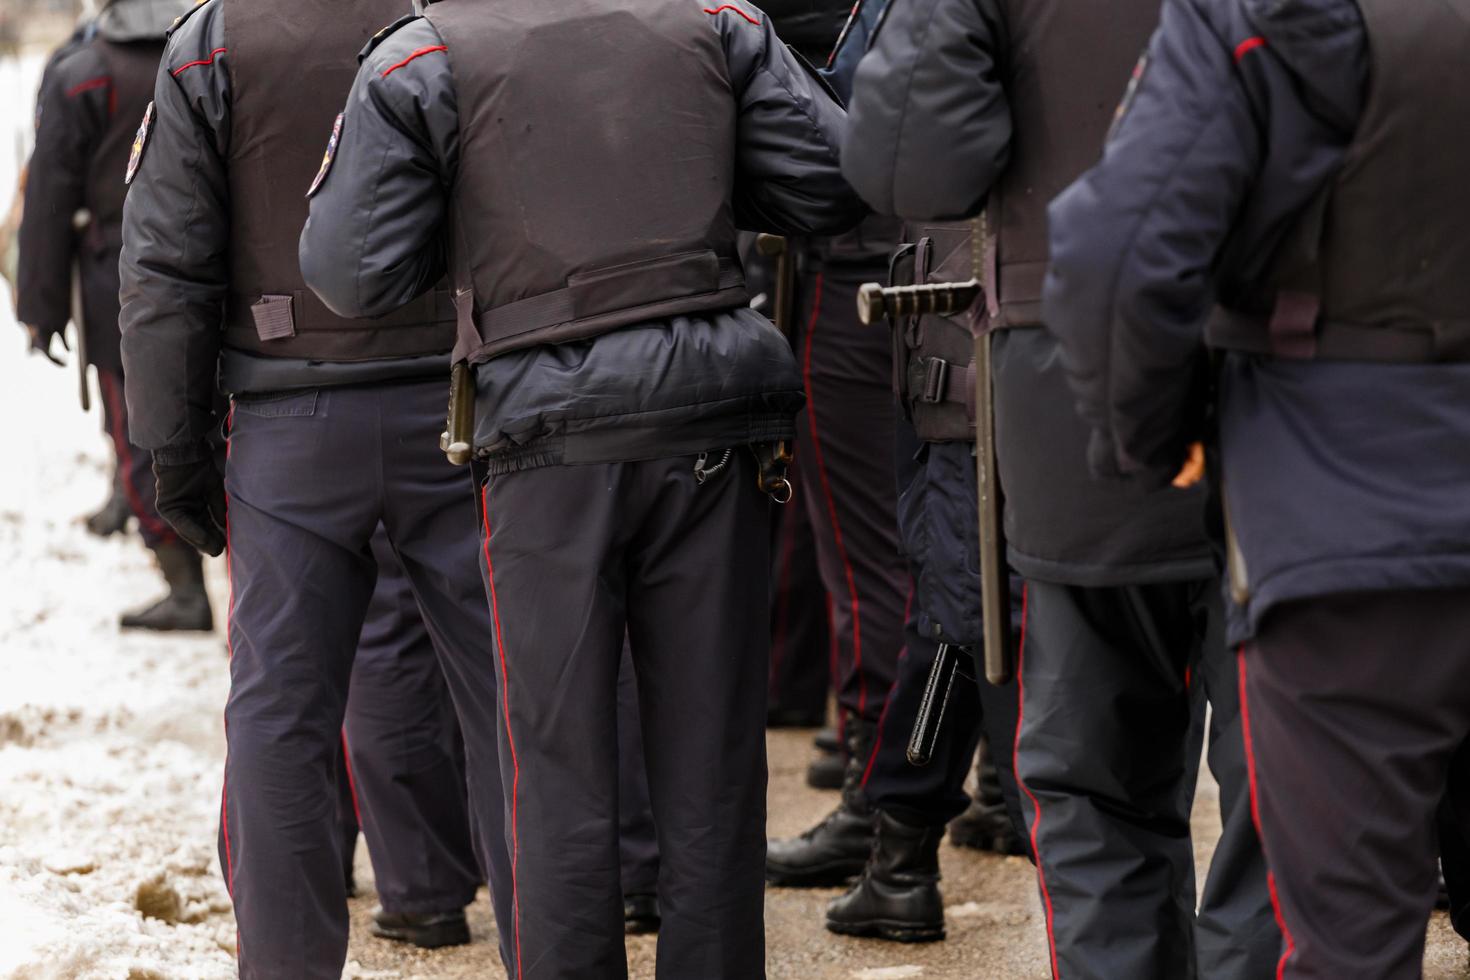 tula, Russia gennaio 23, 2021 folla di polizia ufficiali nel nero uniforme con antiproiettile giubbotti e pistole - Visualizza a partire dal Indietro. foto